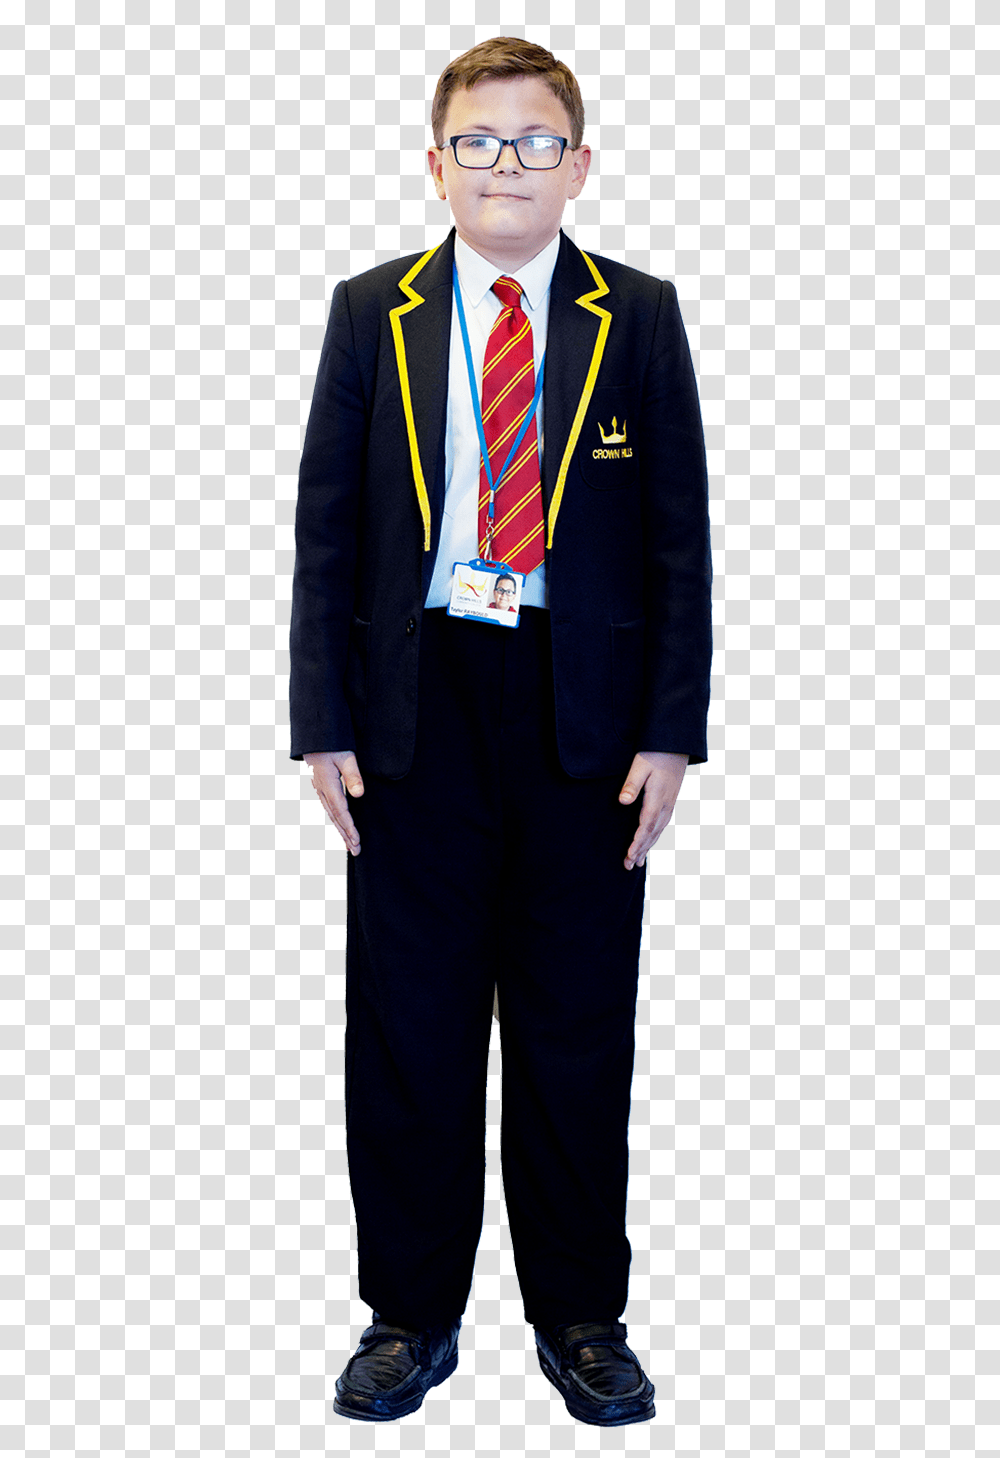 Crown Hills Community College Uniform, Tie, Accessories, Person Transparent Png